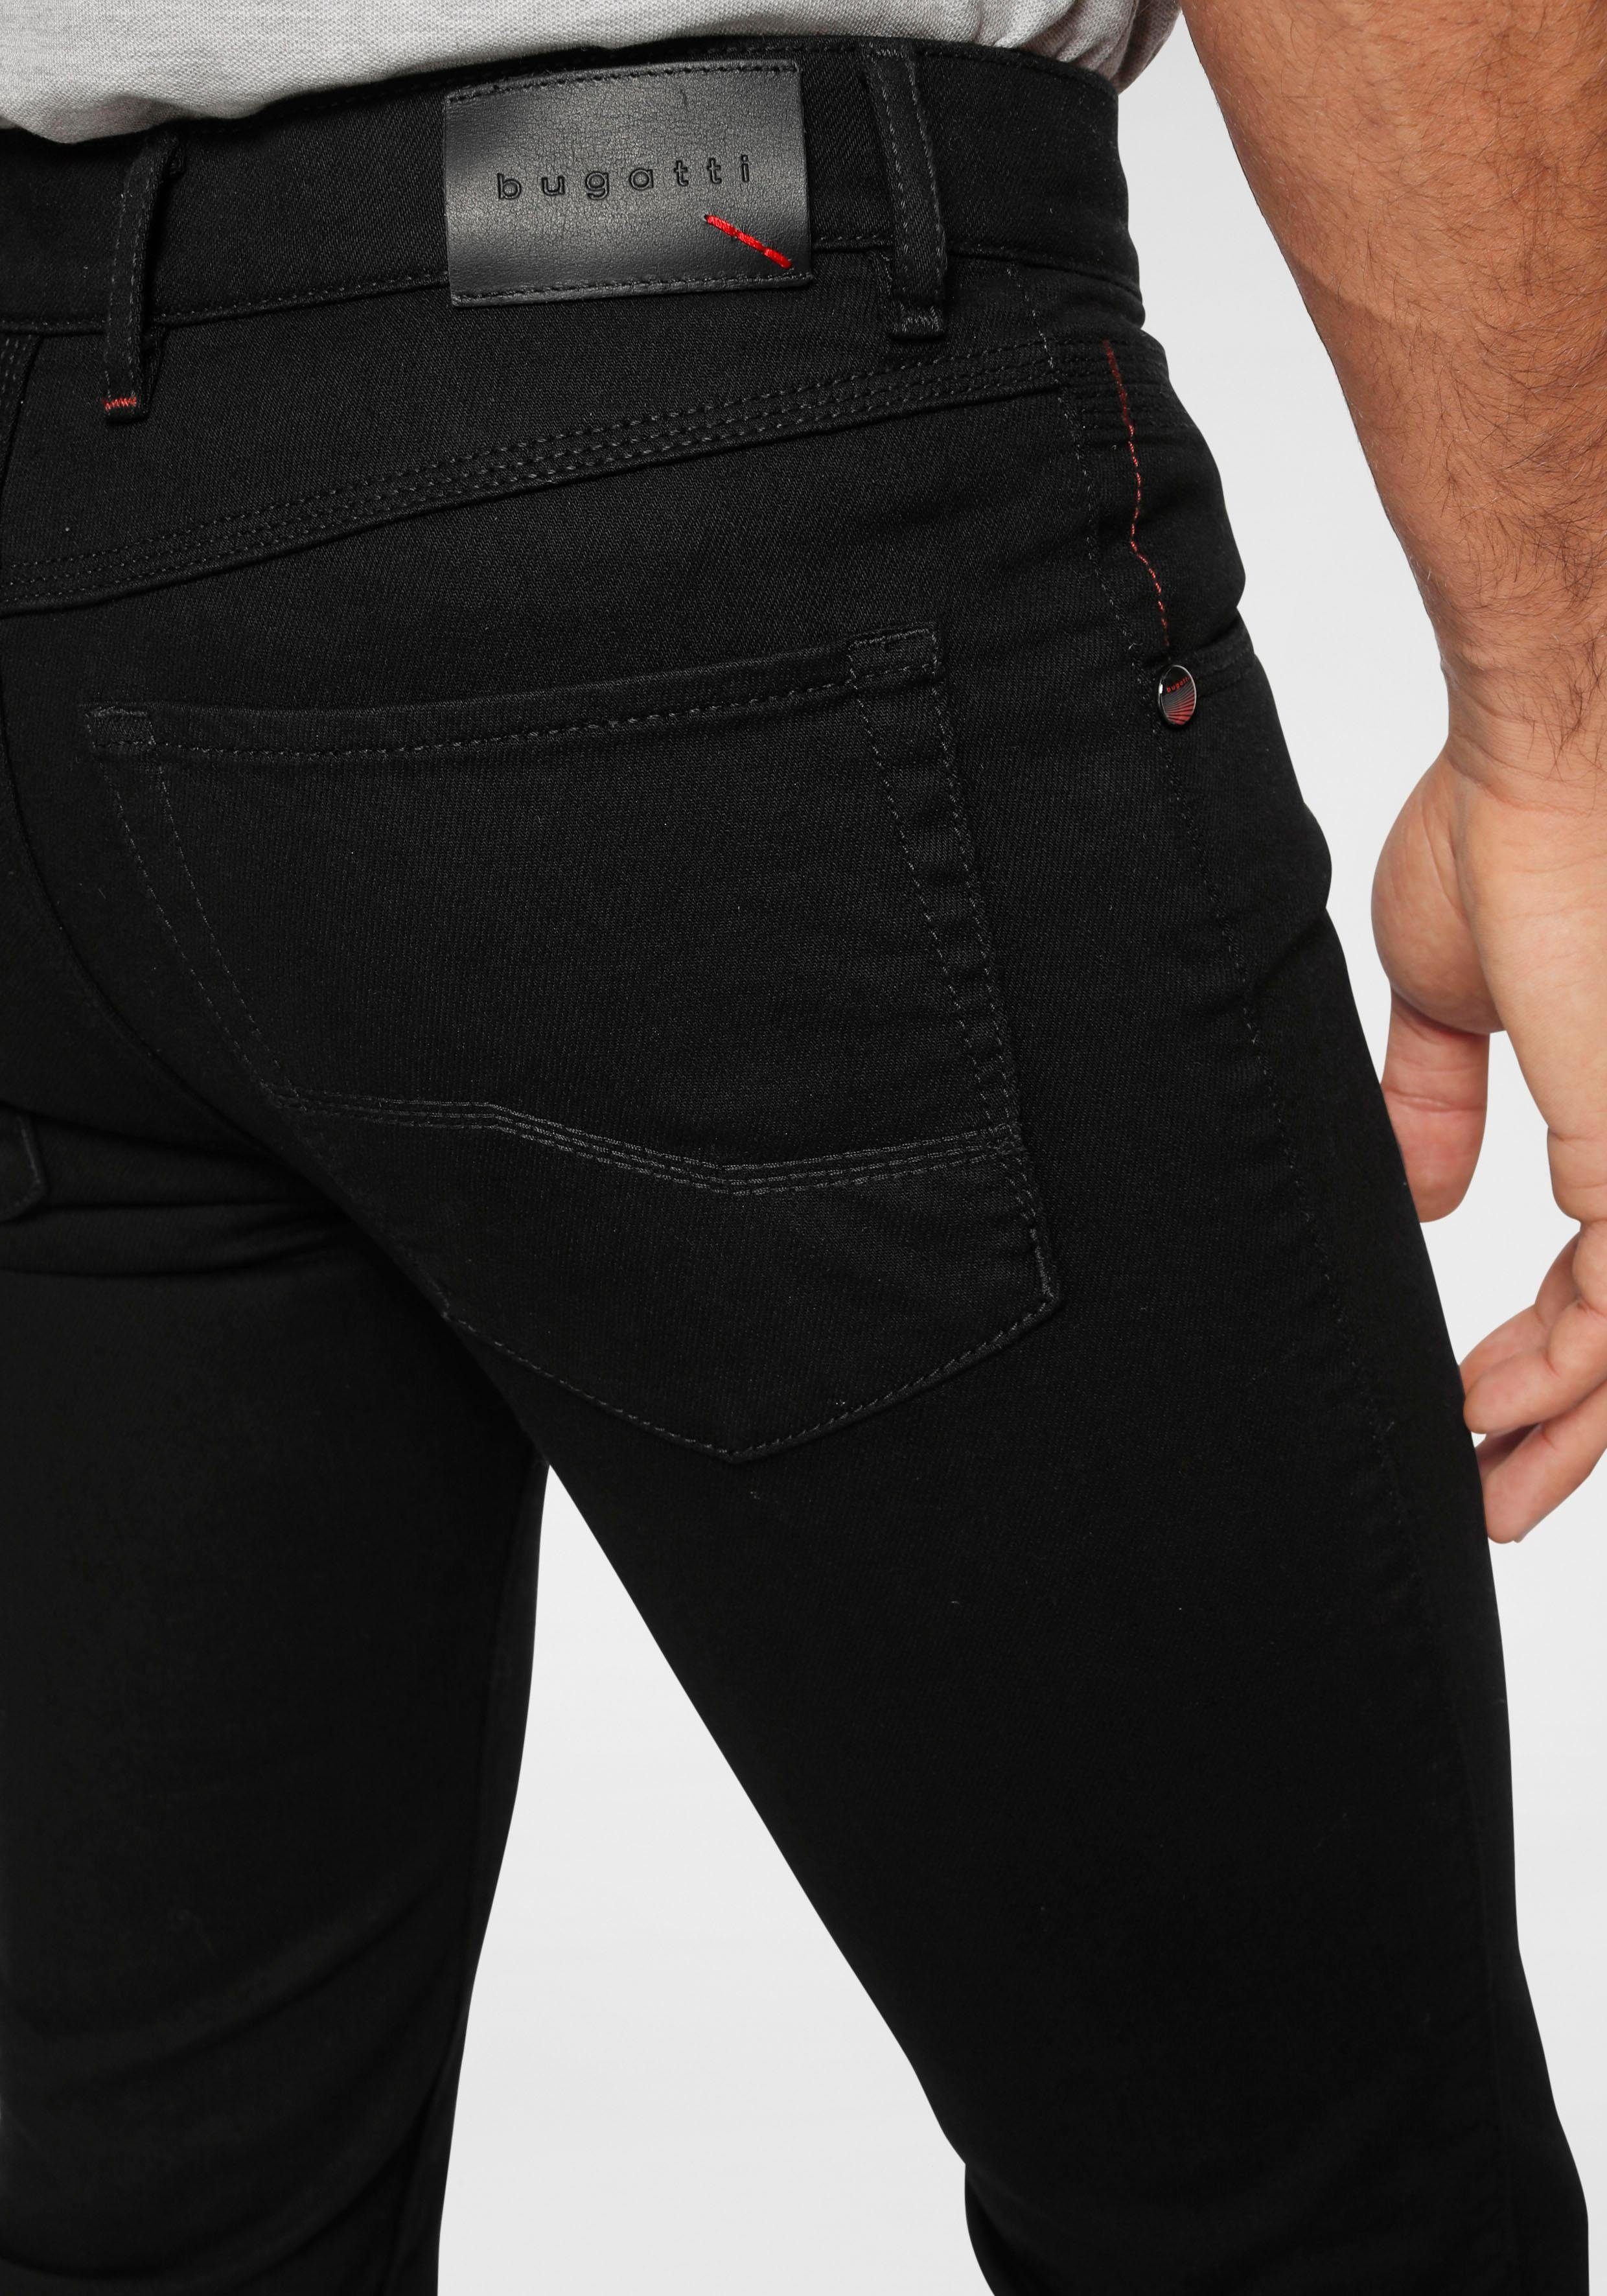 bugatti sich Bewegung an Flexcity Regular-fit-Jeans passt black32 der